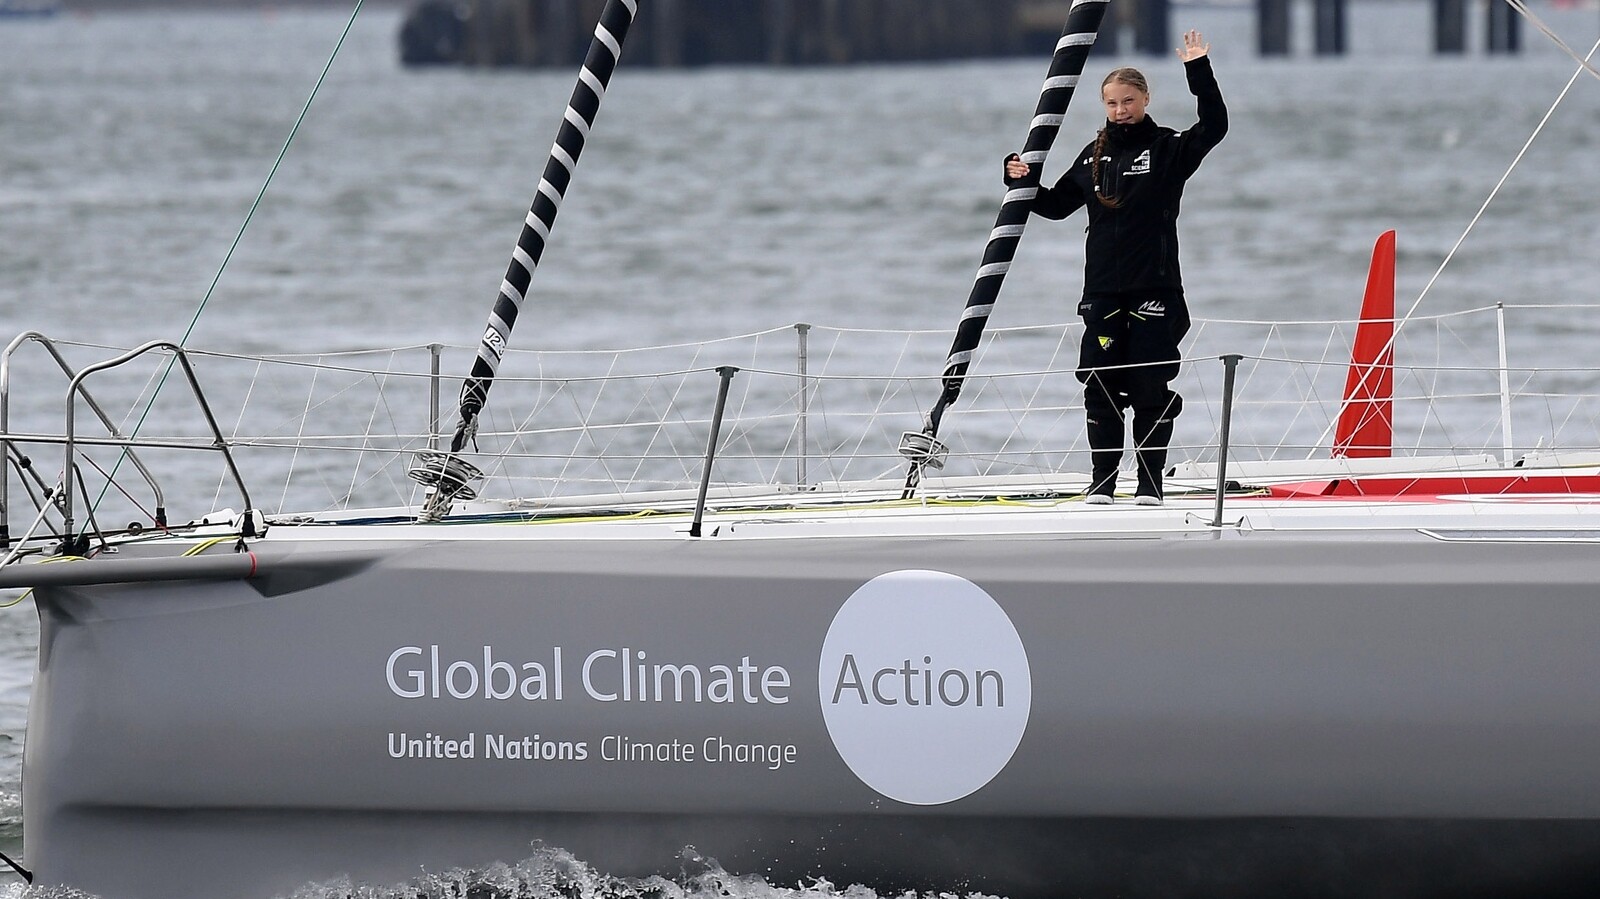 Greta na jachtě mění kurz. S plavbou přes Atlantik jí pomáhá česká aplikace Windy